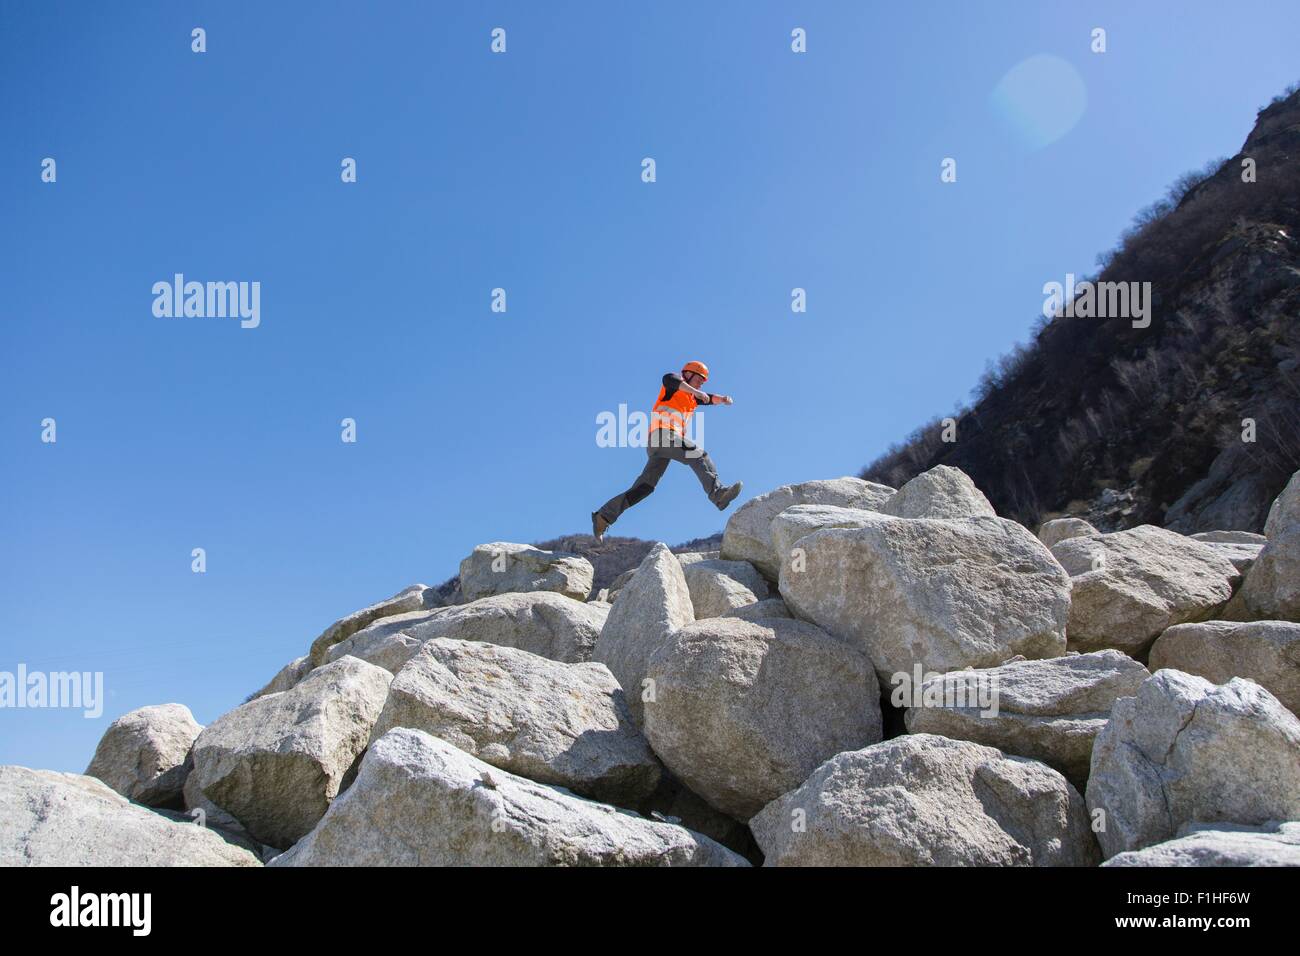 Trabajador saltando sobre una pila de rocas en cantera Foto de stock